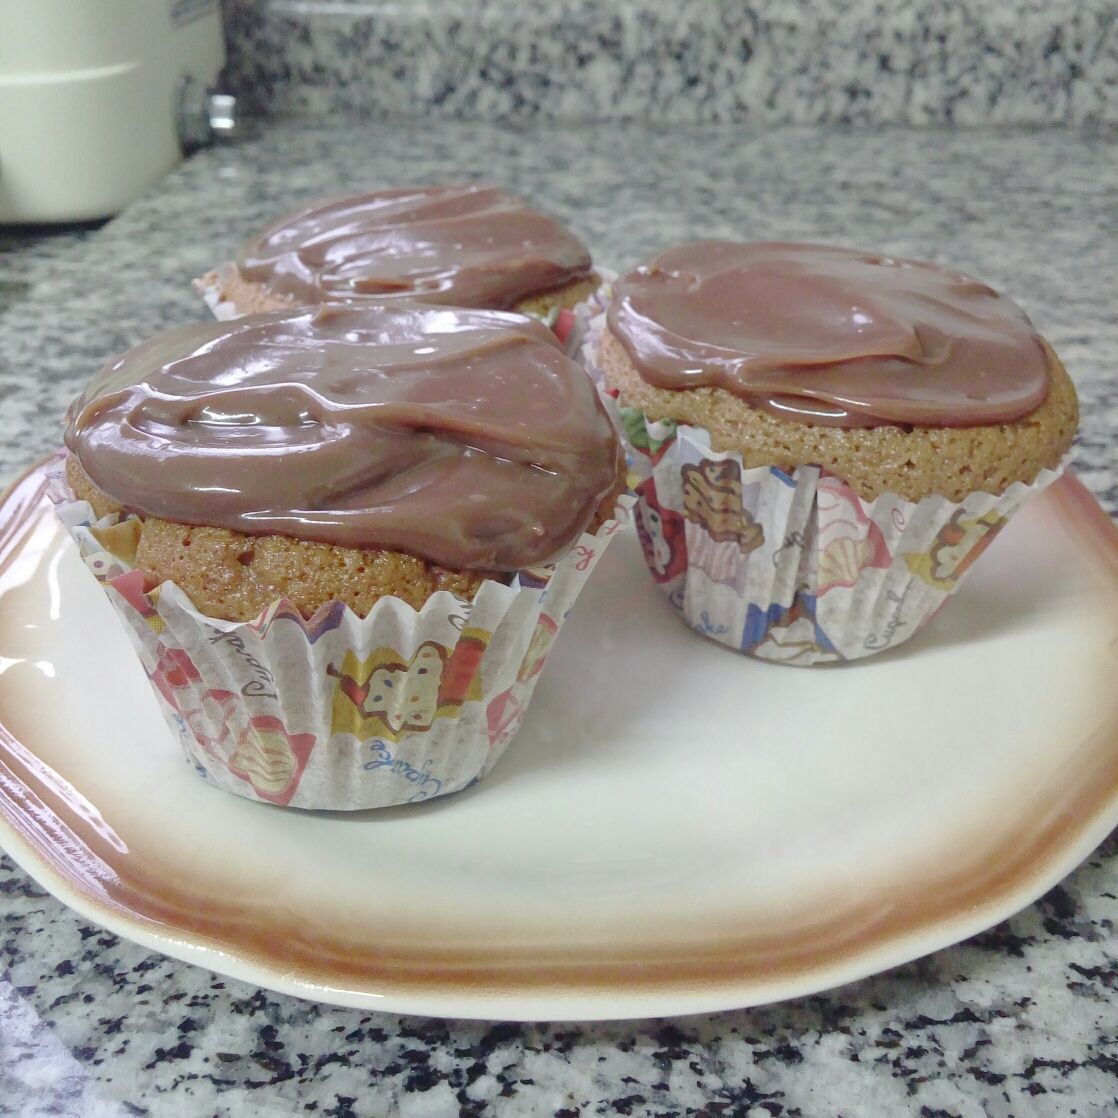 Muffin de chocolate com leite condensado